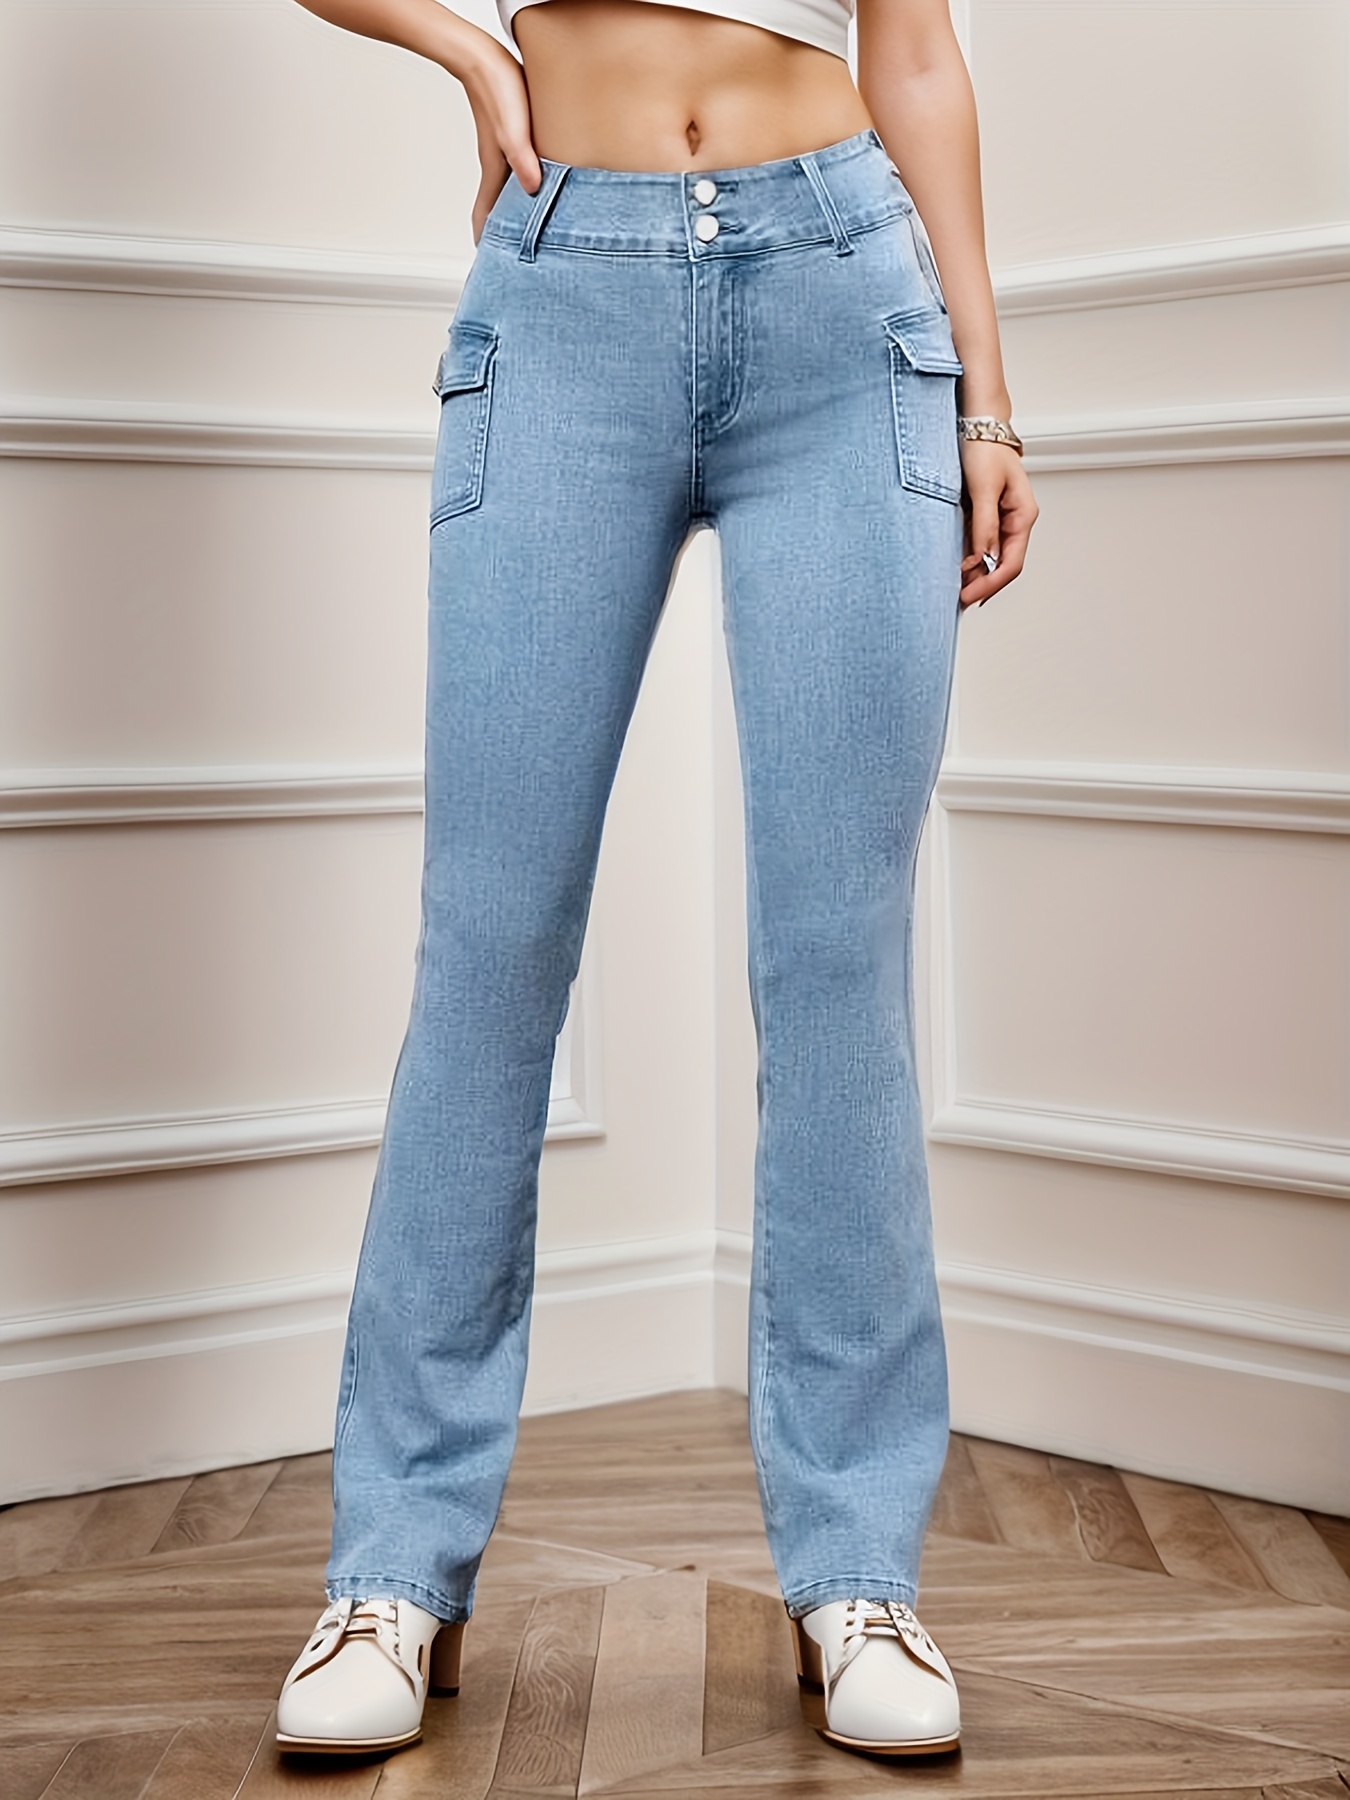 Contrast Color Chic Bootcut Jeans, High Waist Slim Fit Fashion Denim Pants,  Women's Denim Jeans & Clothing